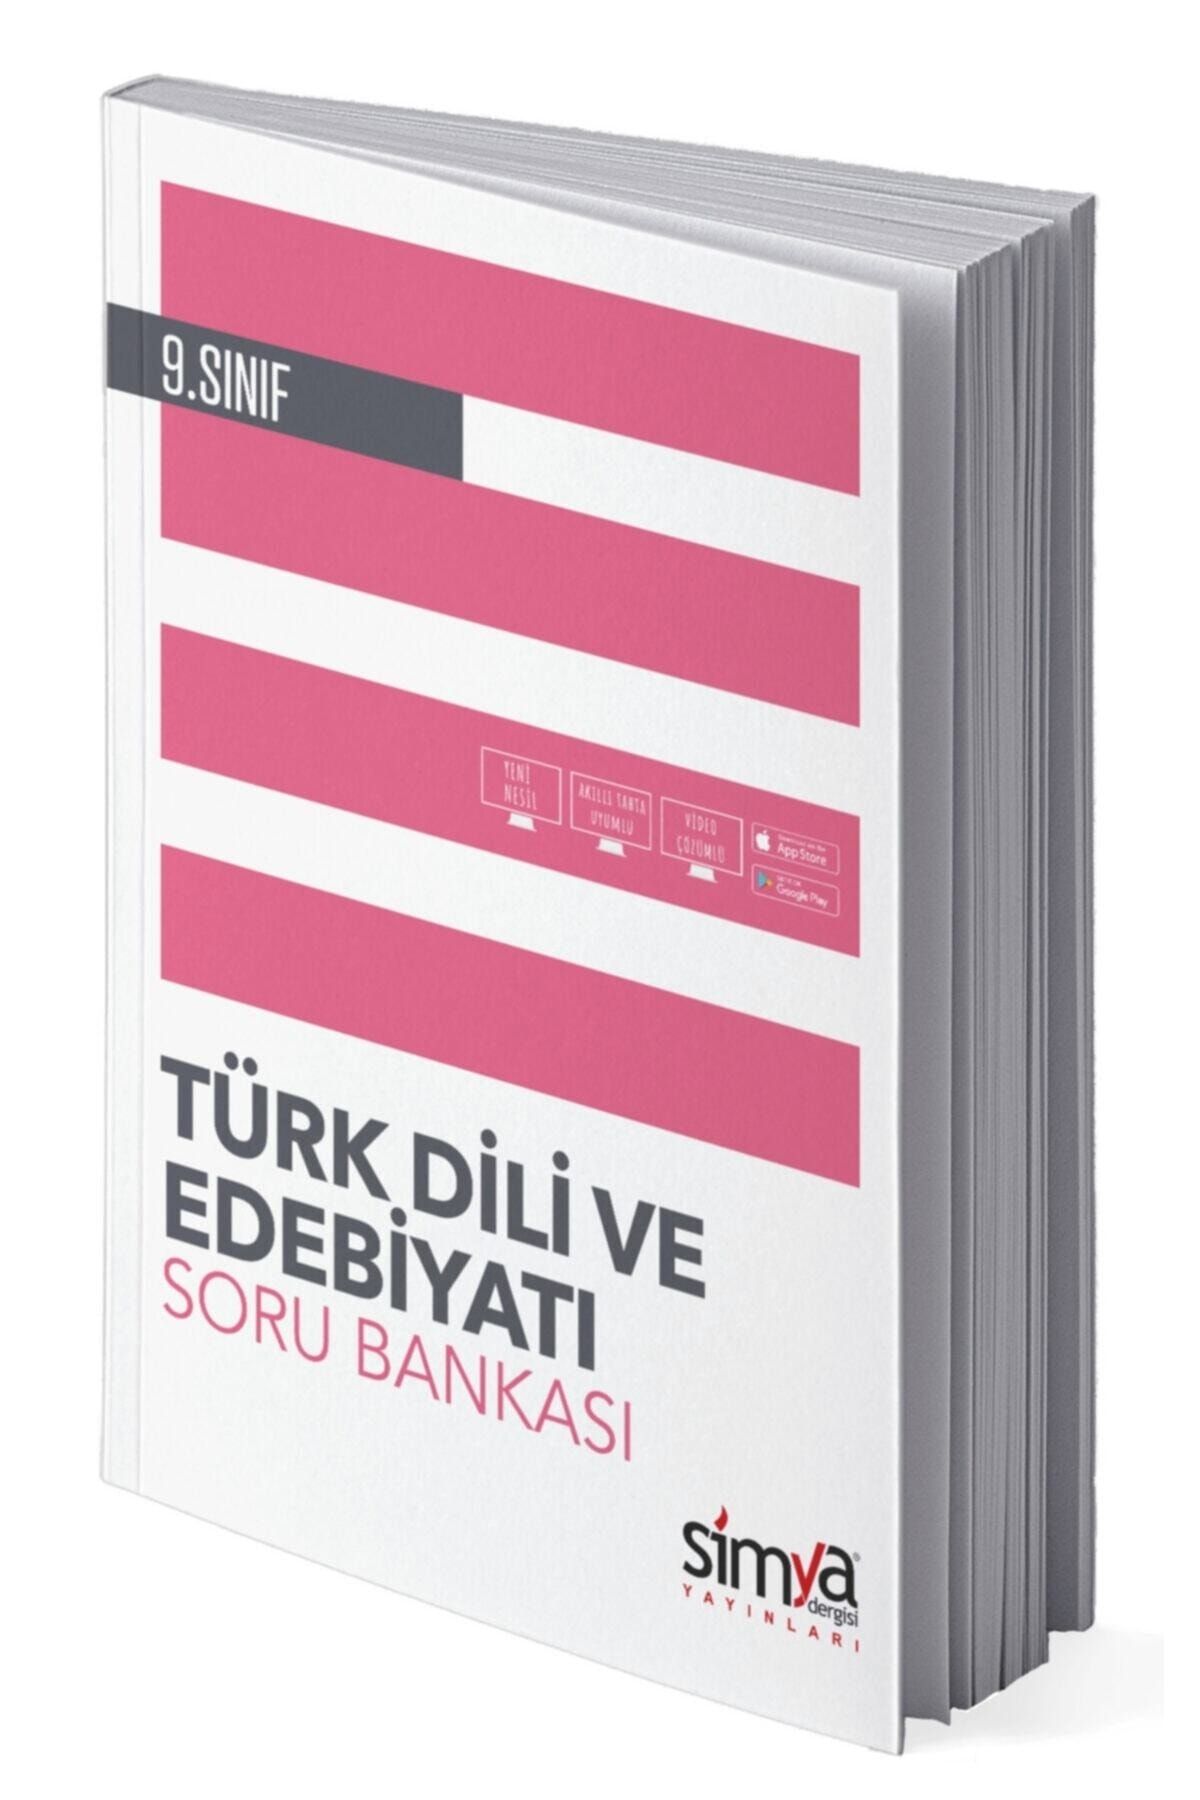 Simya Yayınları 9.sınıf Türk Dili Ve Edebiyat Soru Bankası Kitabı